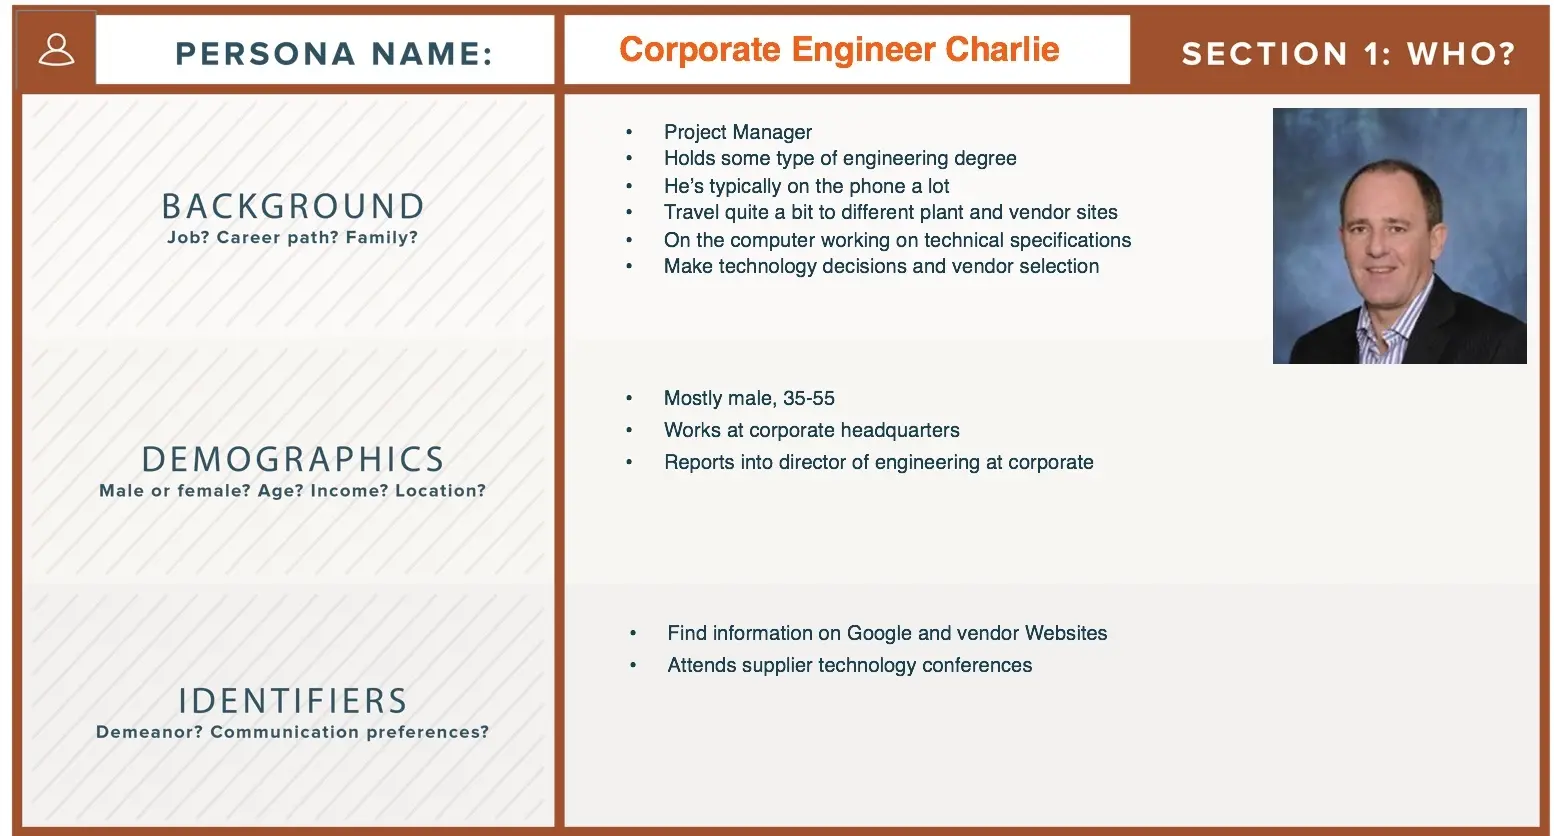 corporate engineer charlie